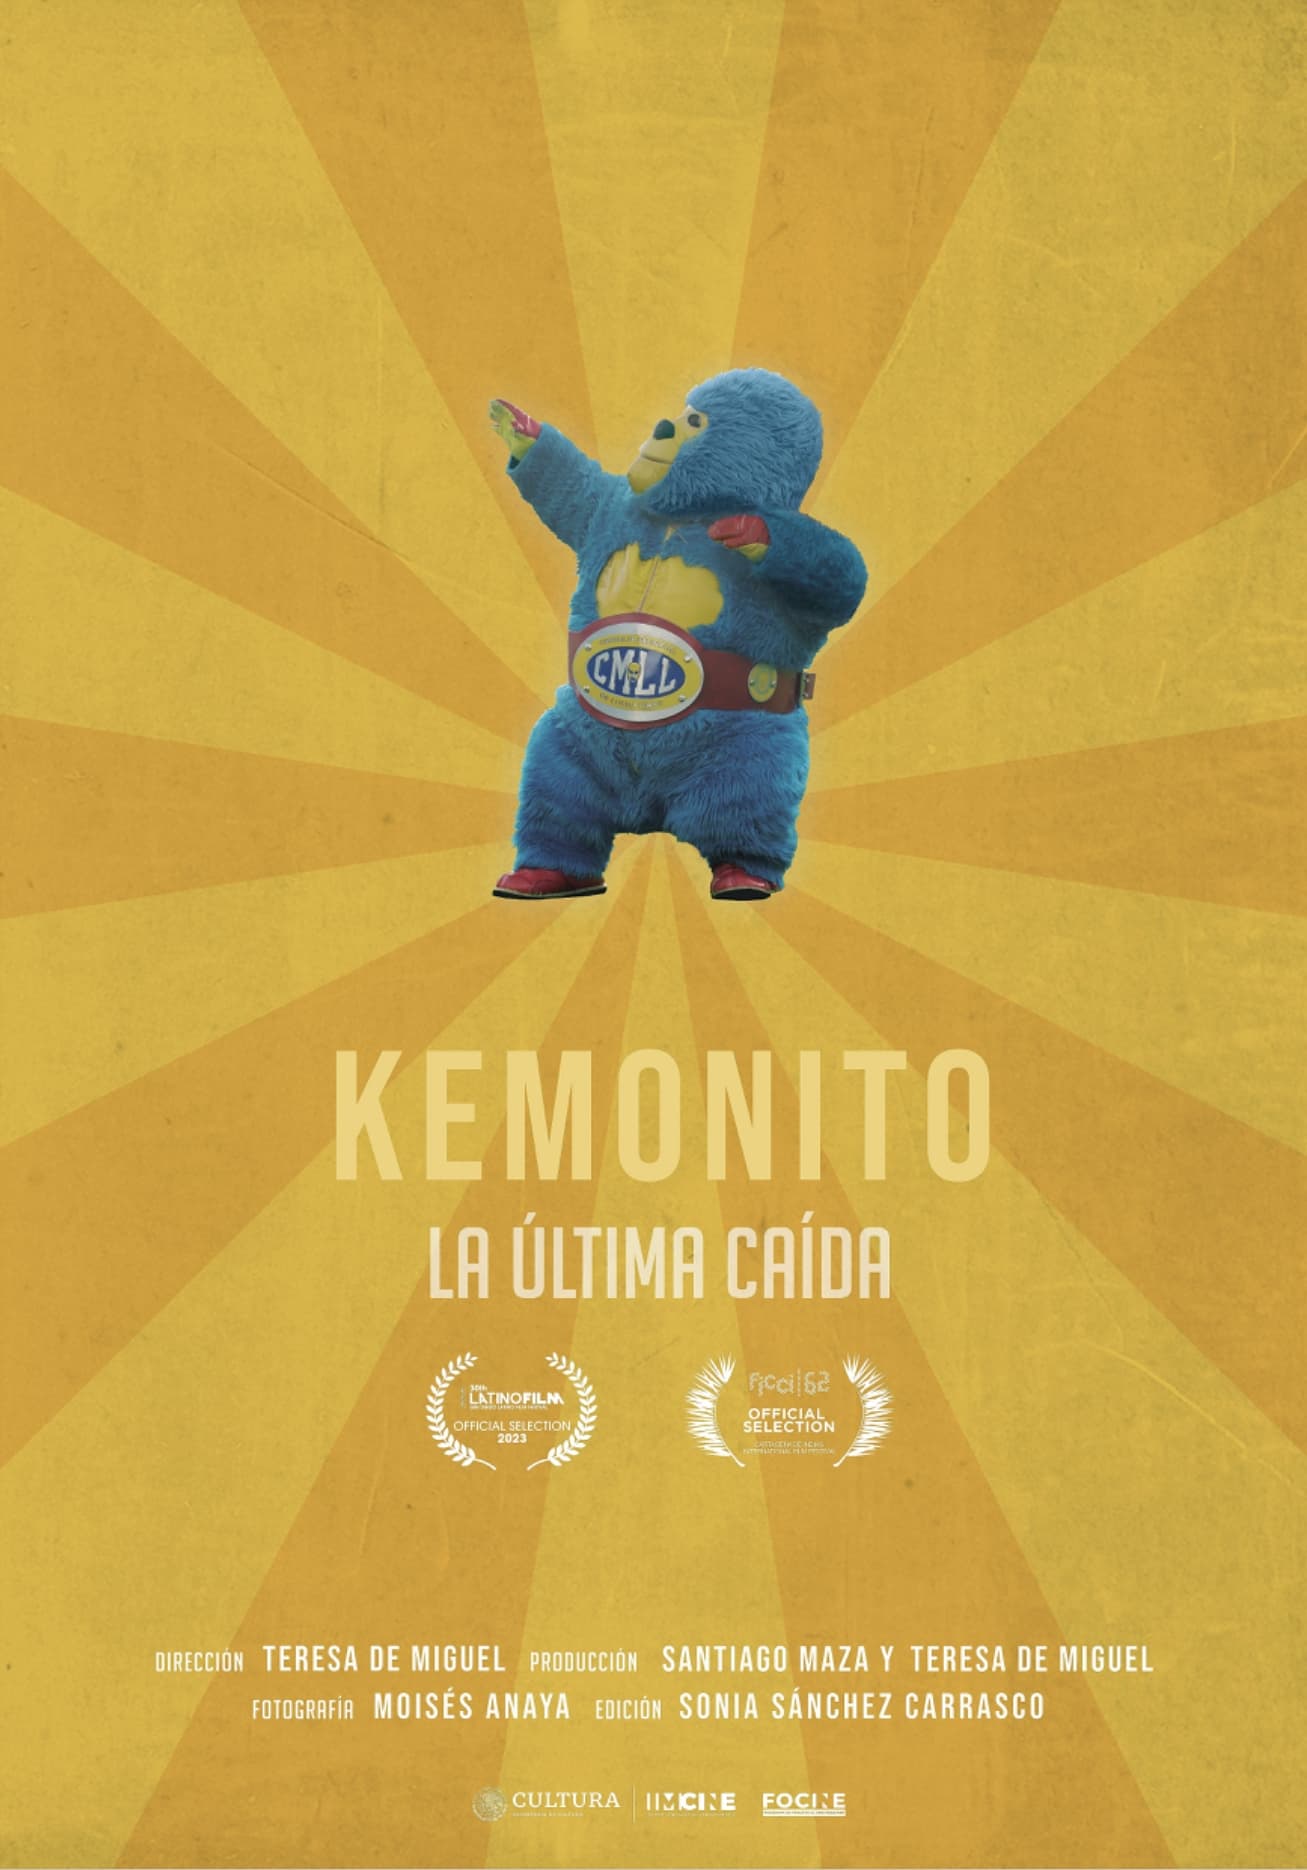 Kemonito: The Final Fall